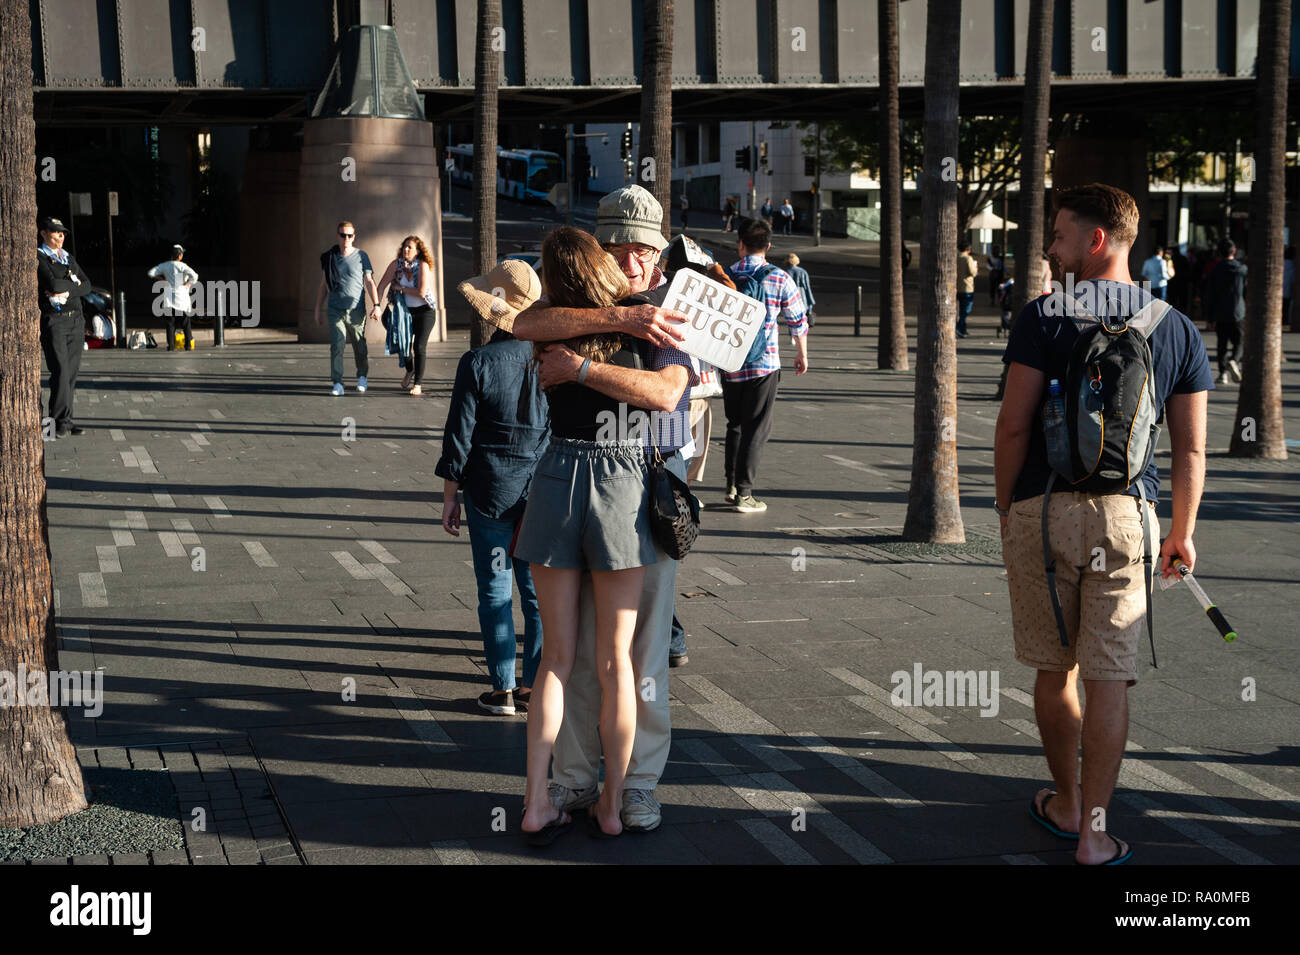 06.05.2018, Sydney, Nuovo Galles del Sud, Australien - Ein Mann, der am Circular Quay Gratisumarmungen anbietet, nimmt eine junge Frau in die Arme. 0SL1805 Foto Stock